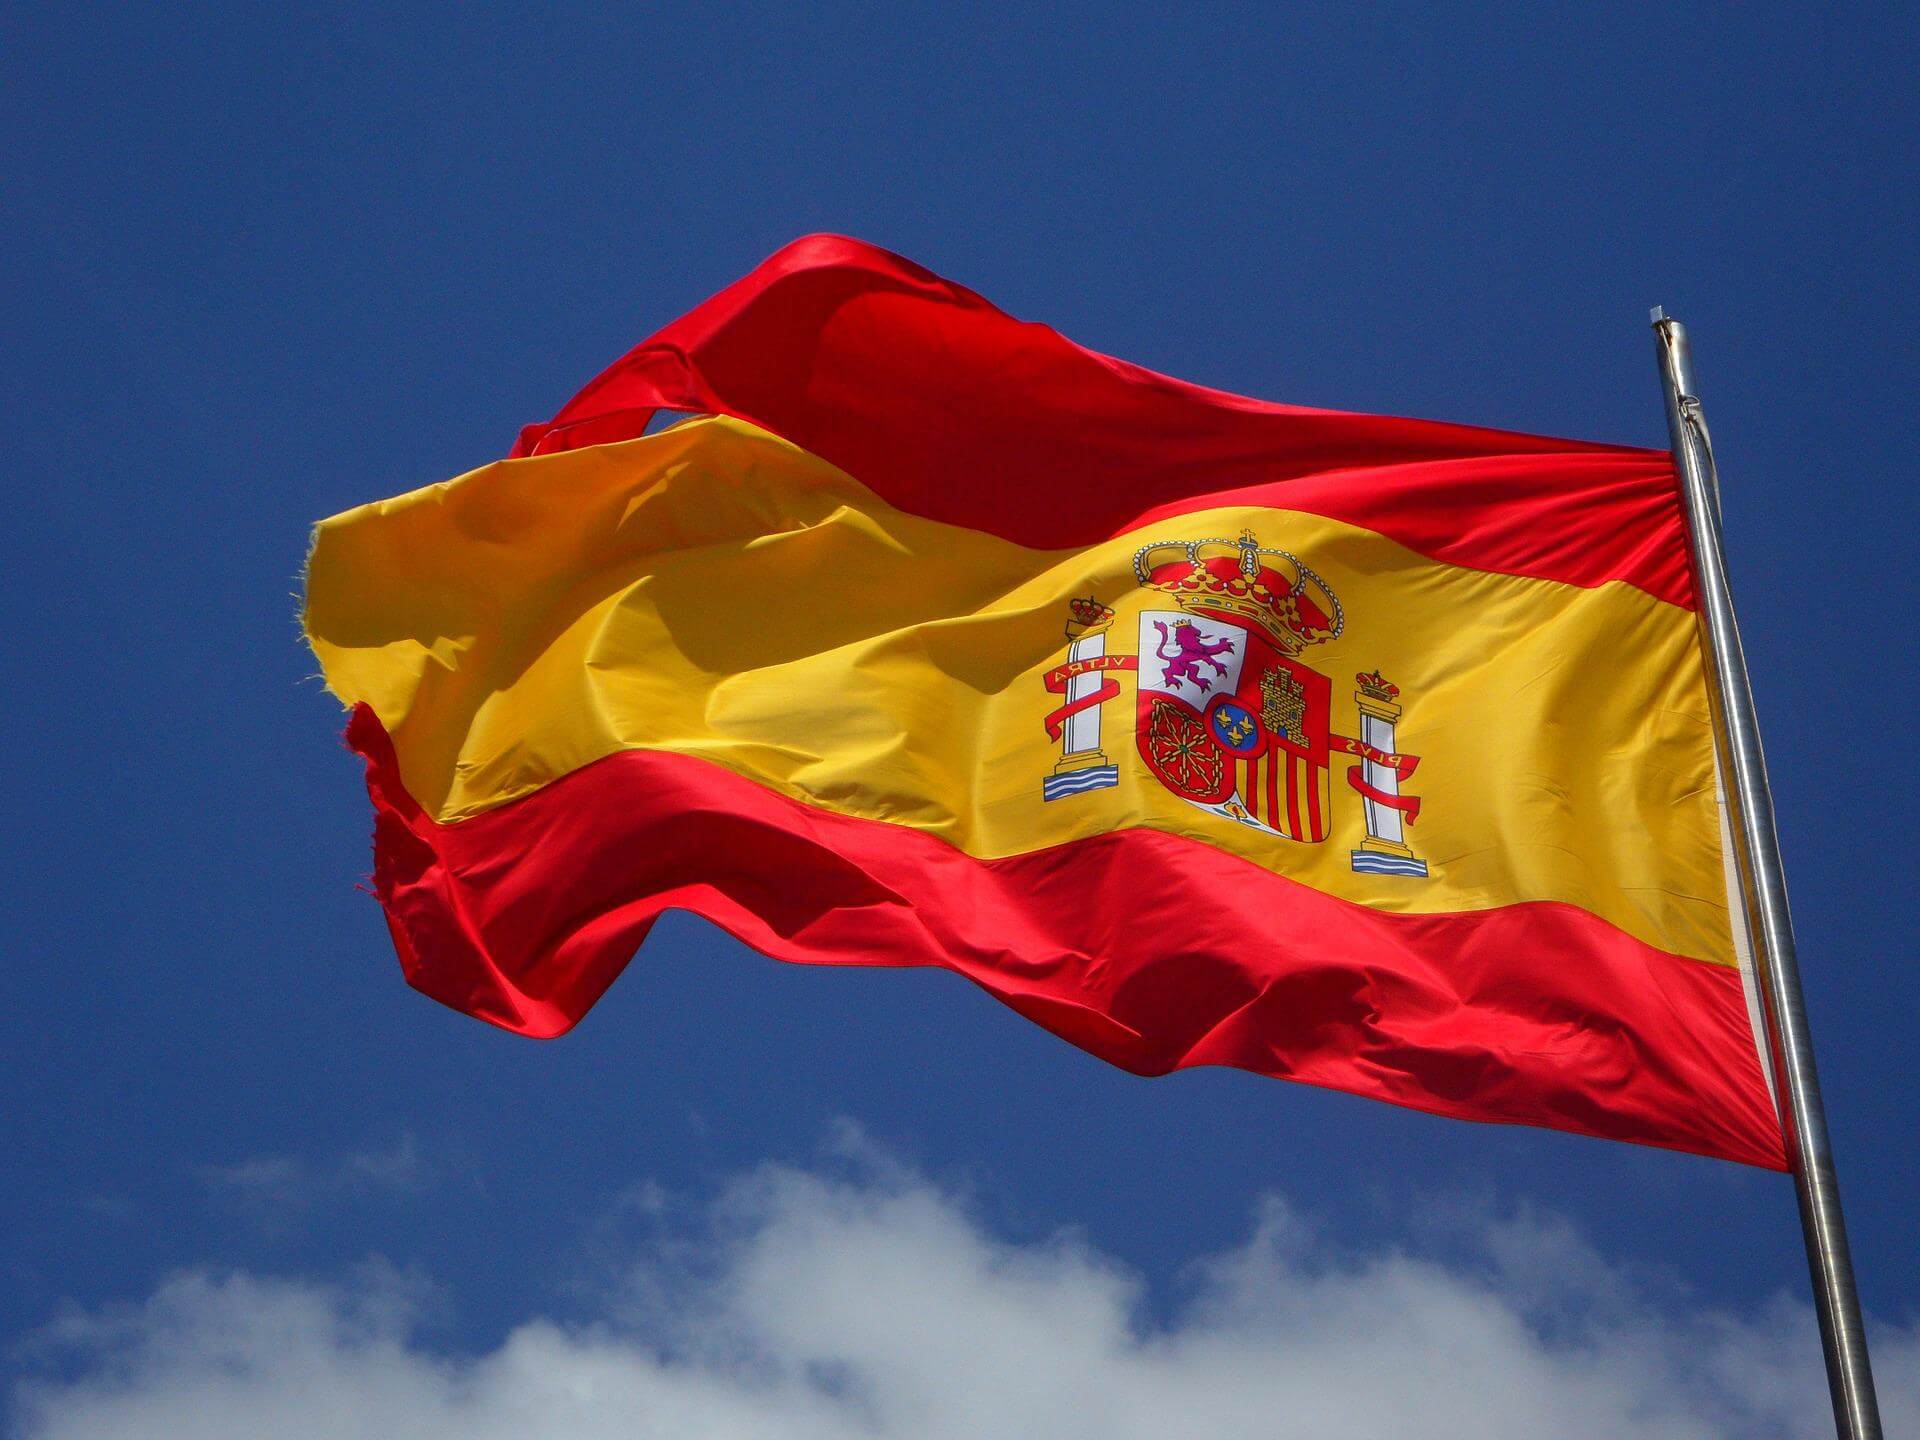 Spanish flag on mast against a blue sky backdrop